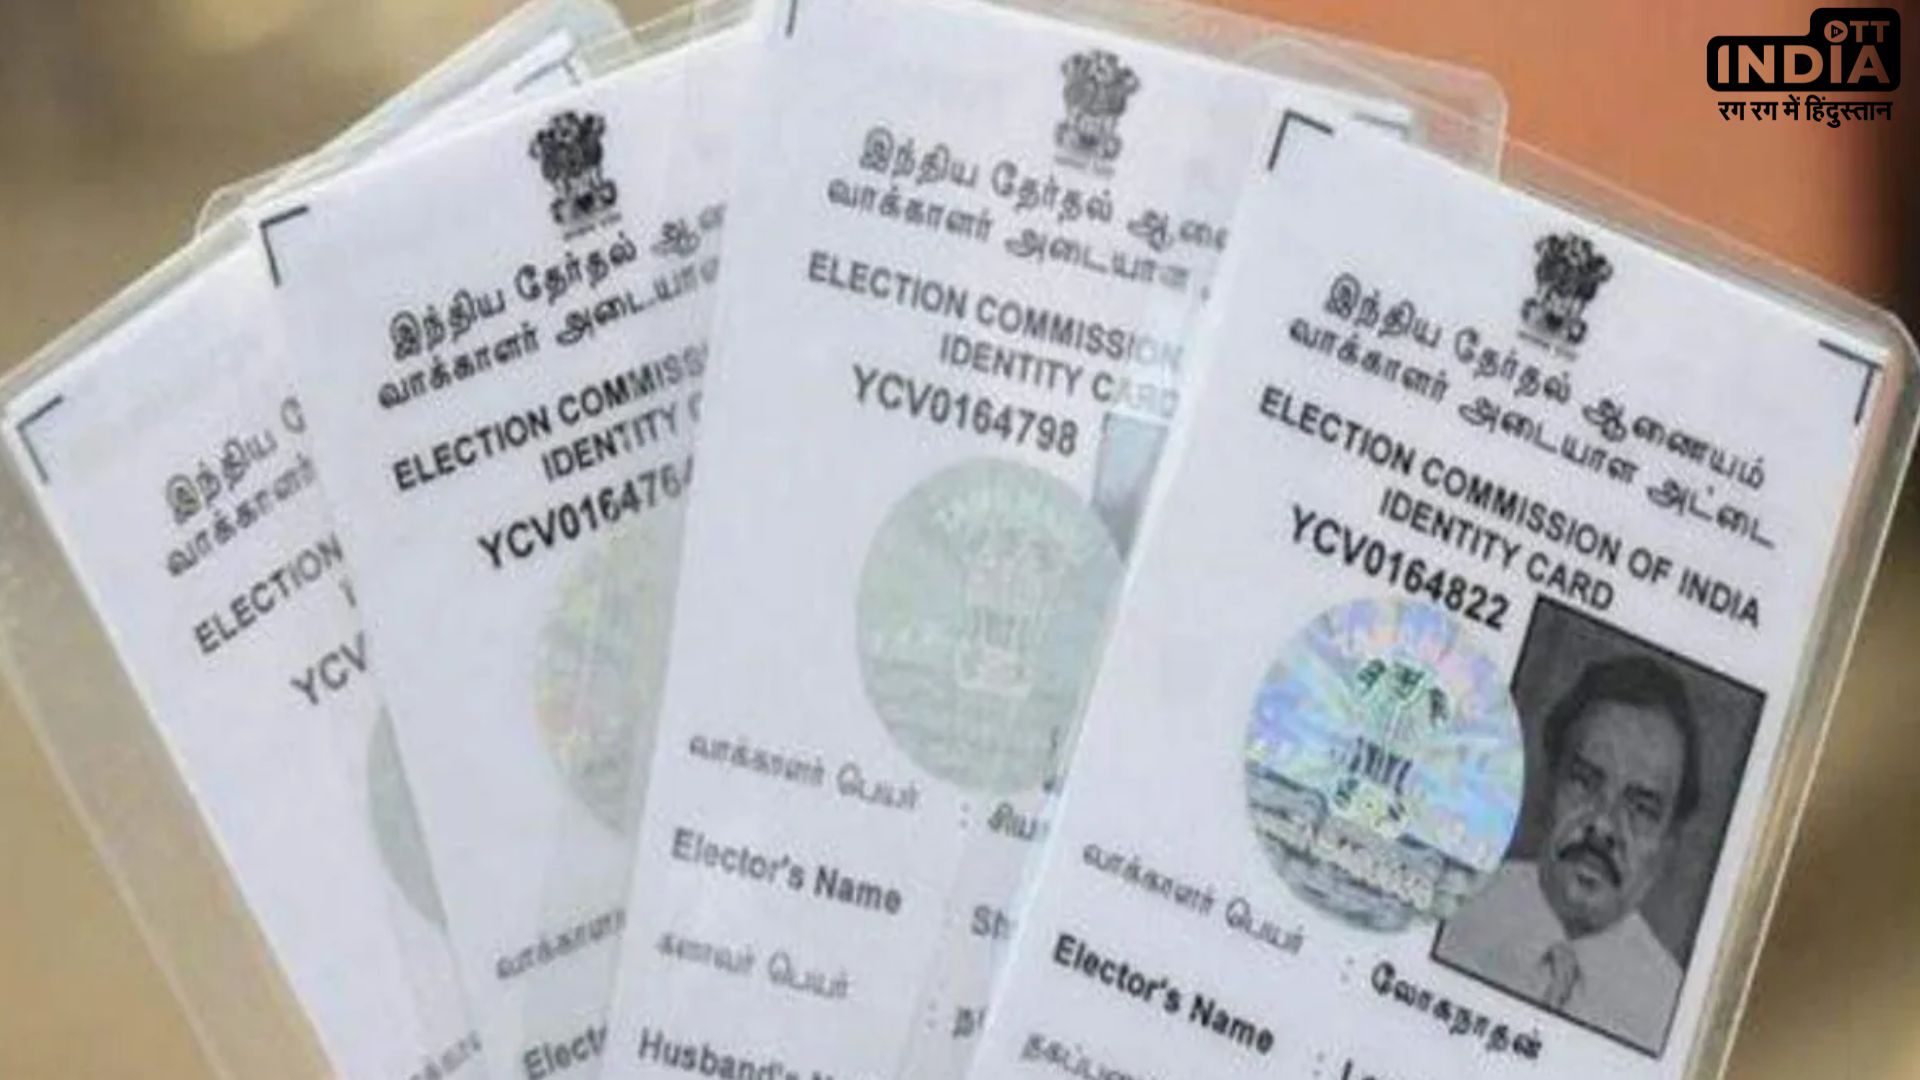 PVC Voter ID Card: सिर्फ मिनटों में घर बैठै आर्डर करें PVC वोटर ID कार्ड, EC दे रहा है फ्री में चेंज करना का मौका